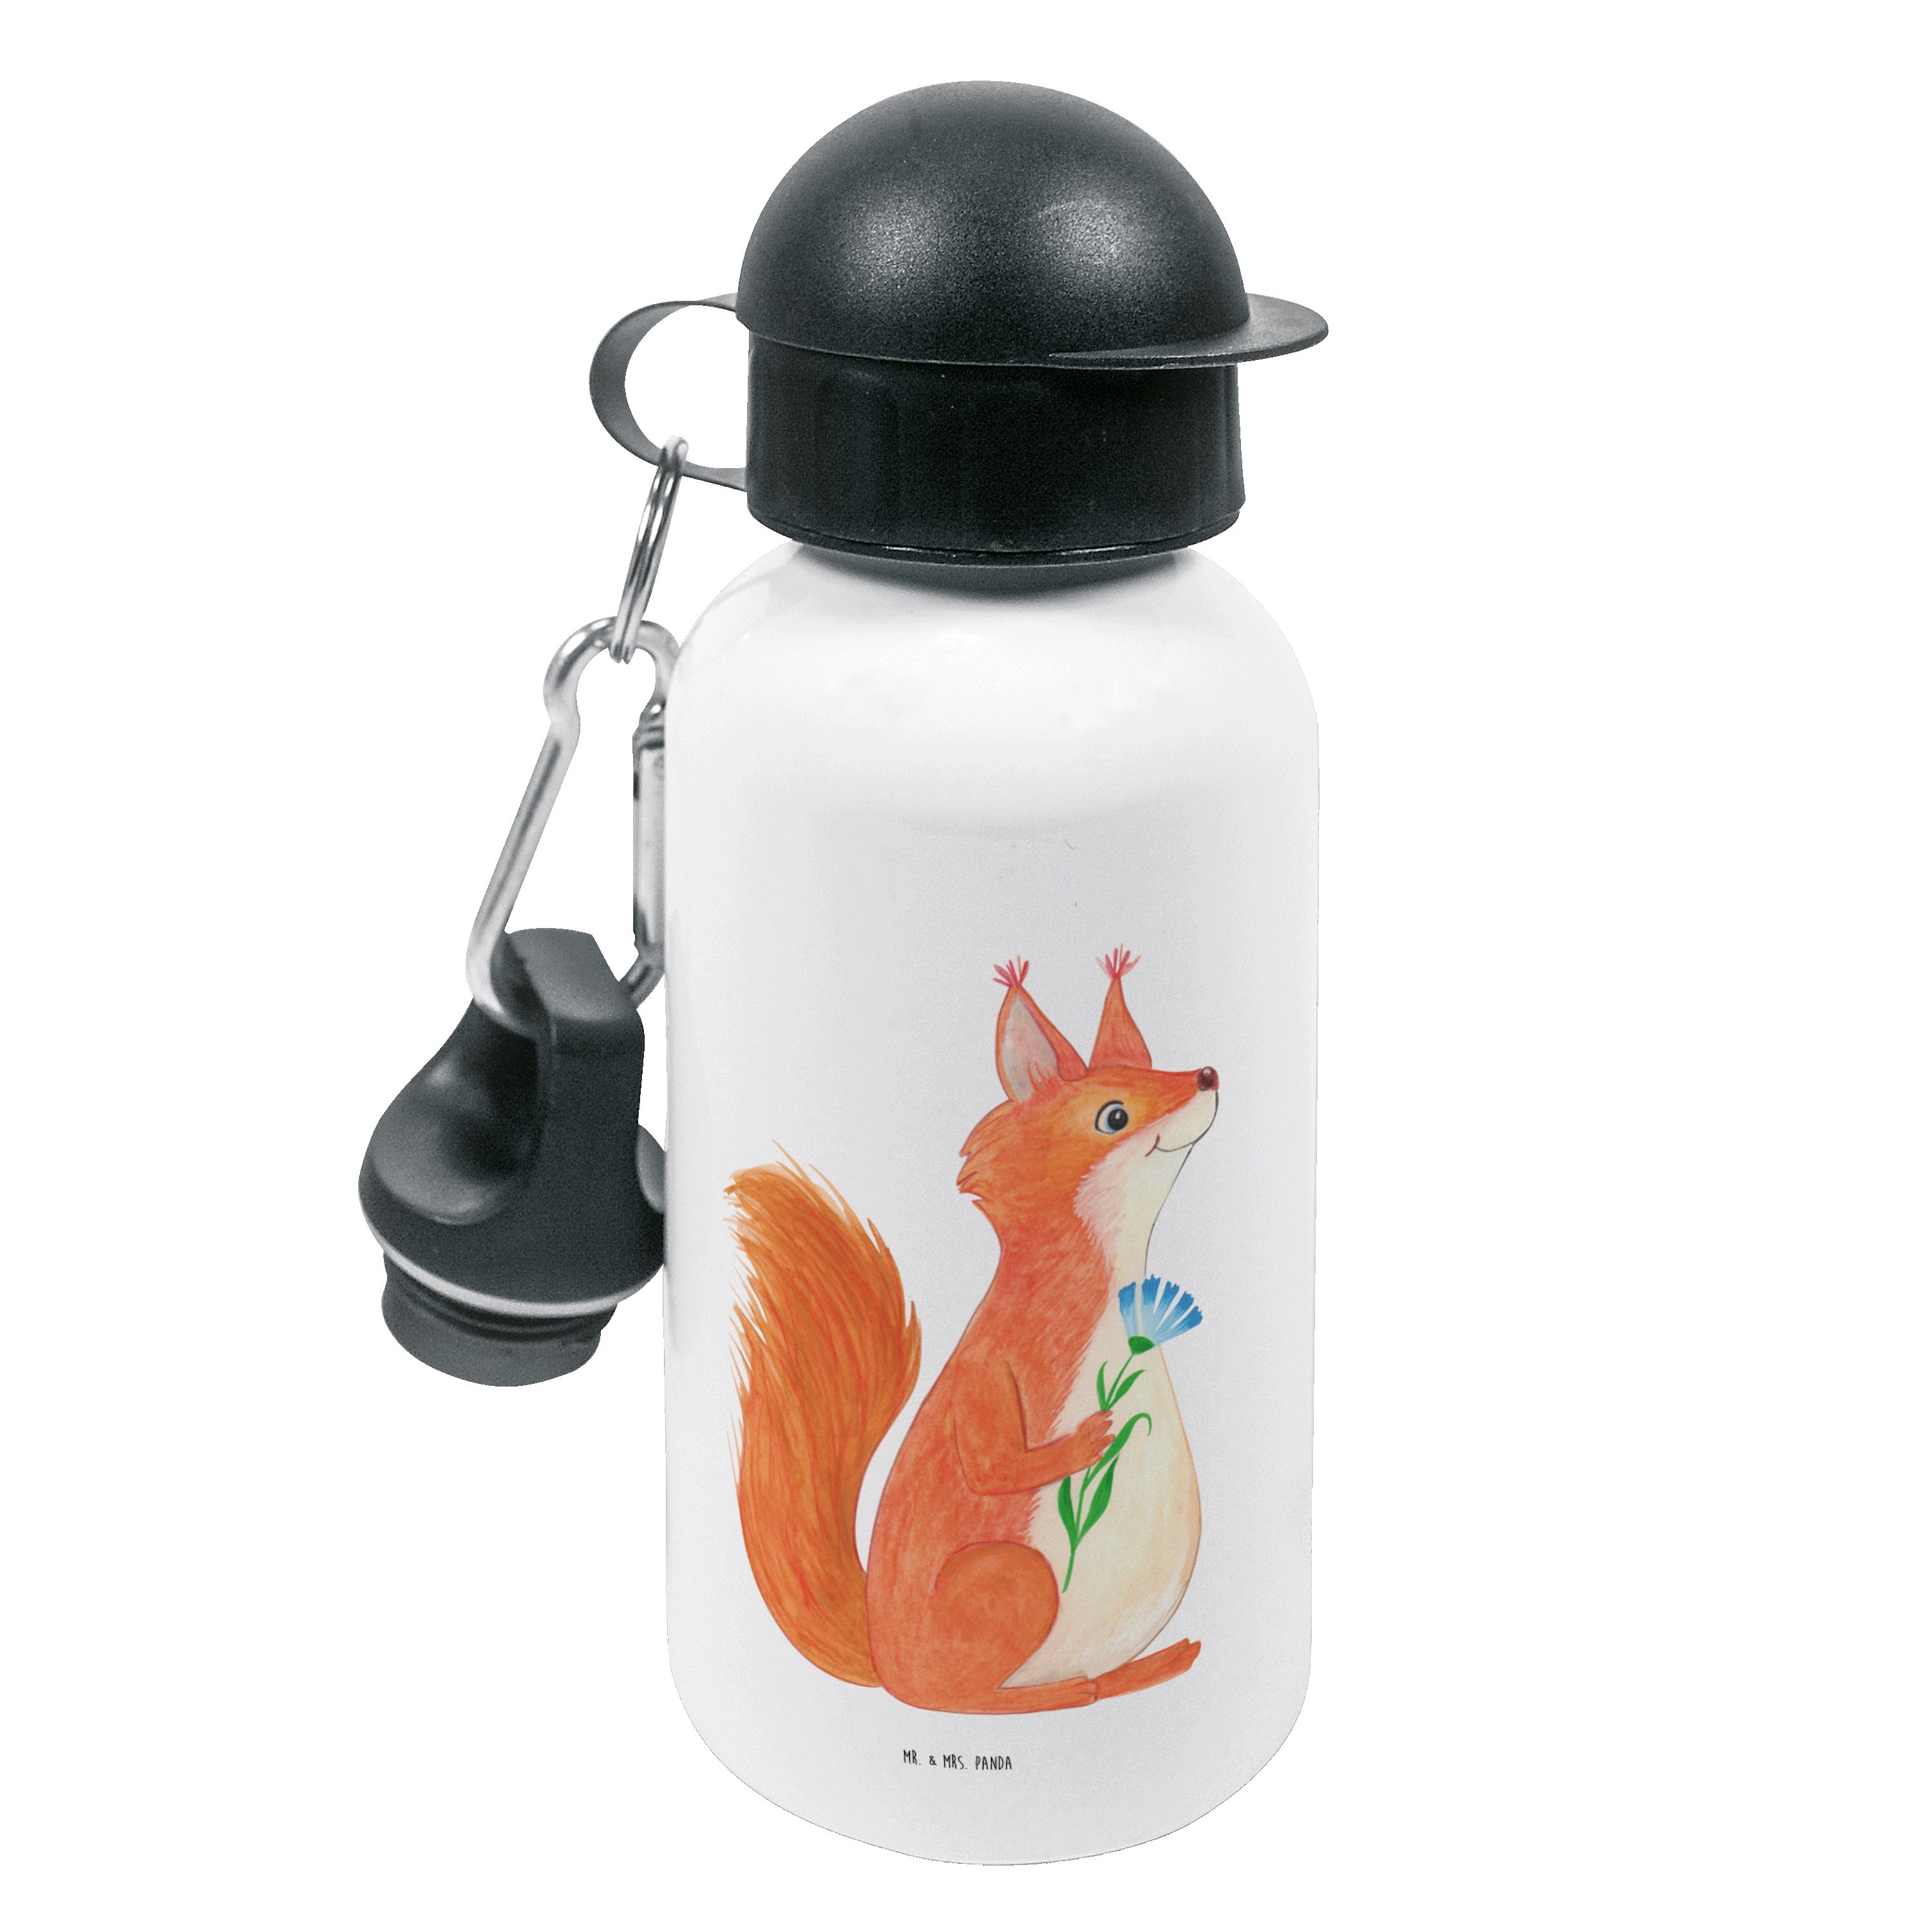 Mr. & Mrs. Panda Trinkflasche Eichhörnchen Blume - Weiß - Geschenk, Eichhorn, lustige Sprüche, Spaß, Mundstück mit Deckel